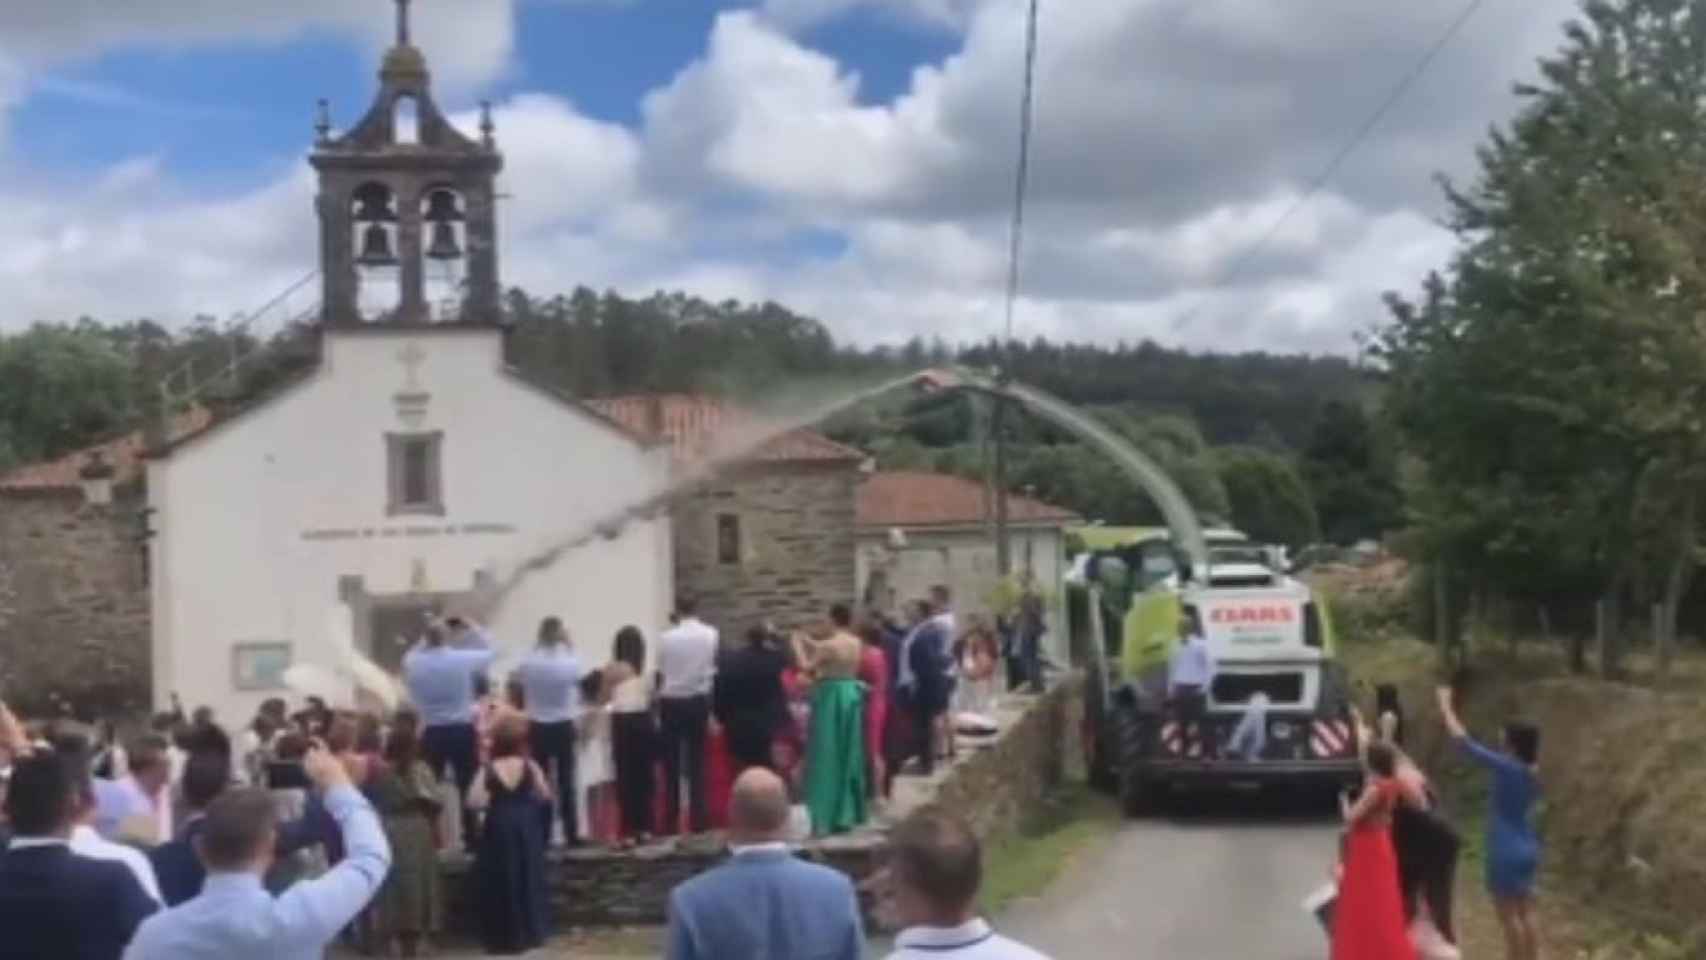 El momentazo a la salida de la iglesia con la cosechadora lanzando confeti